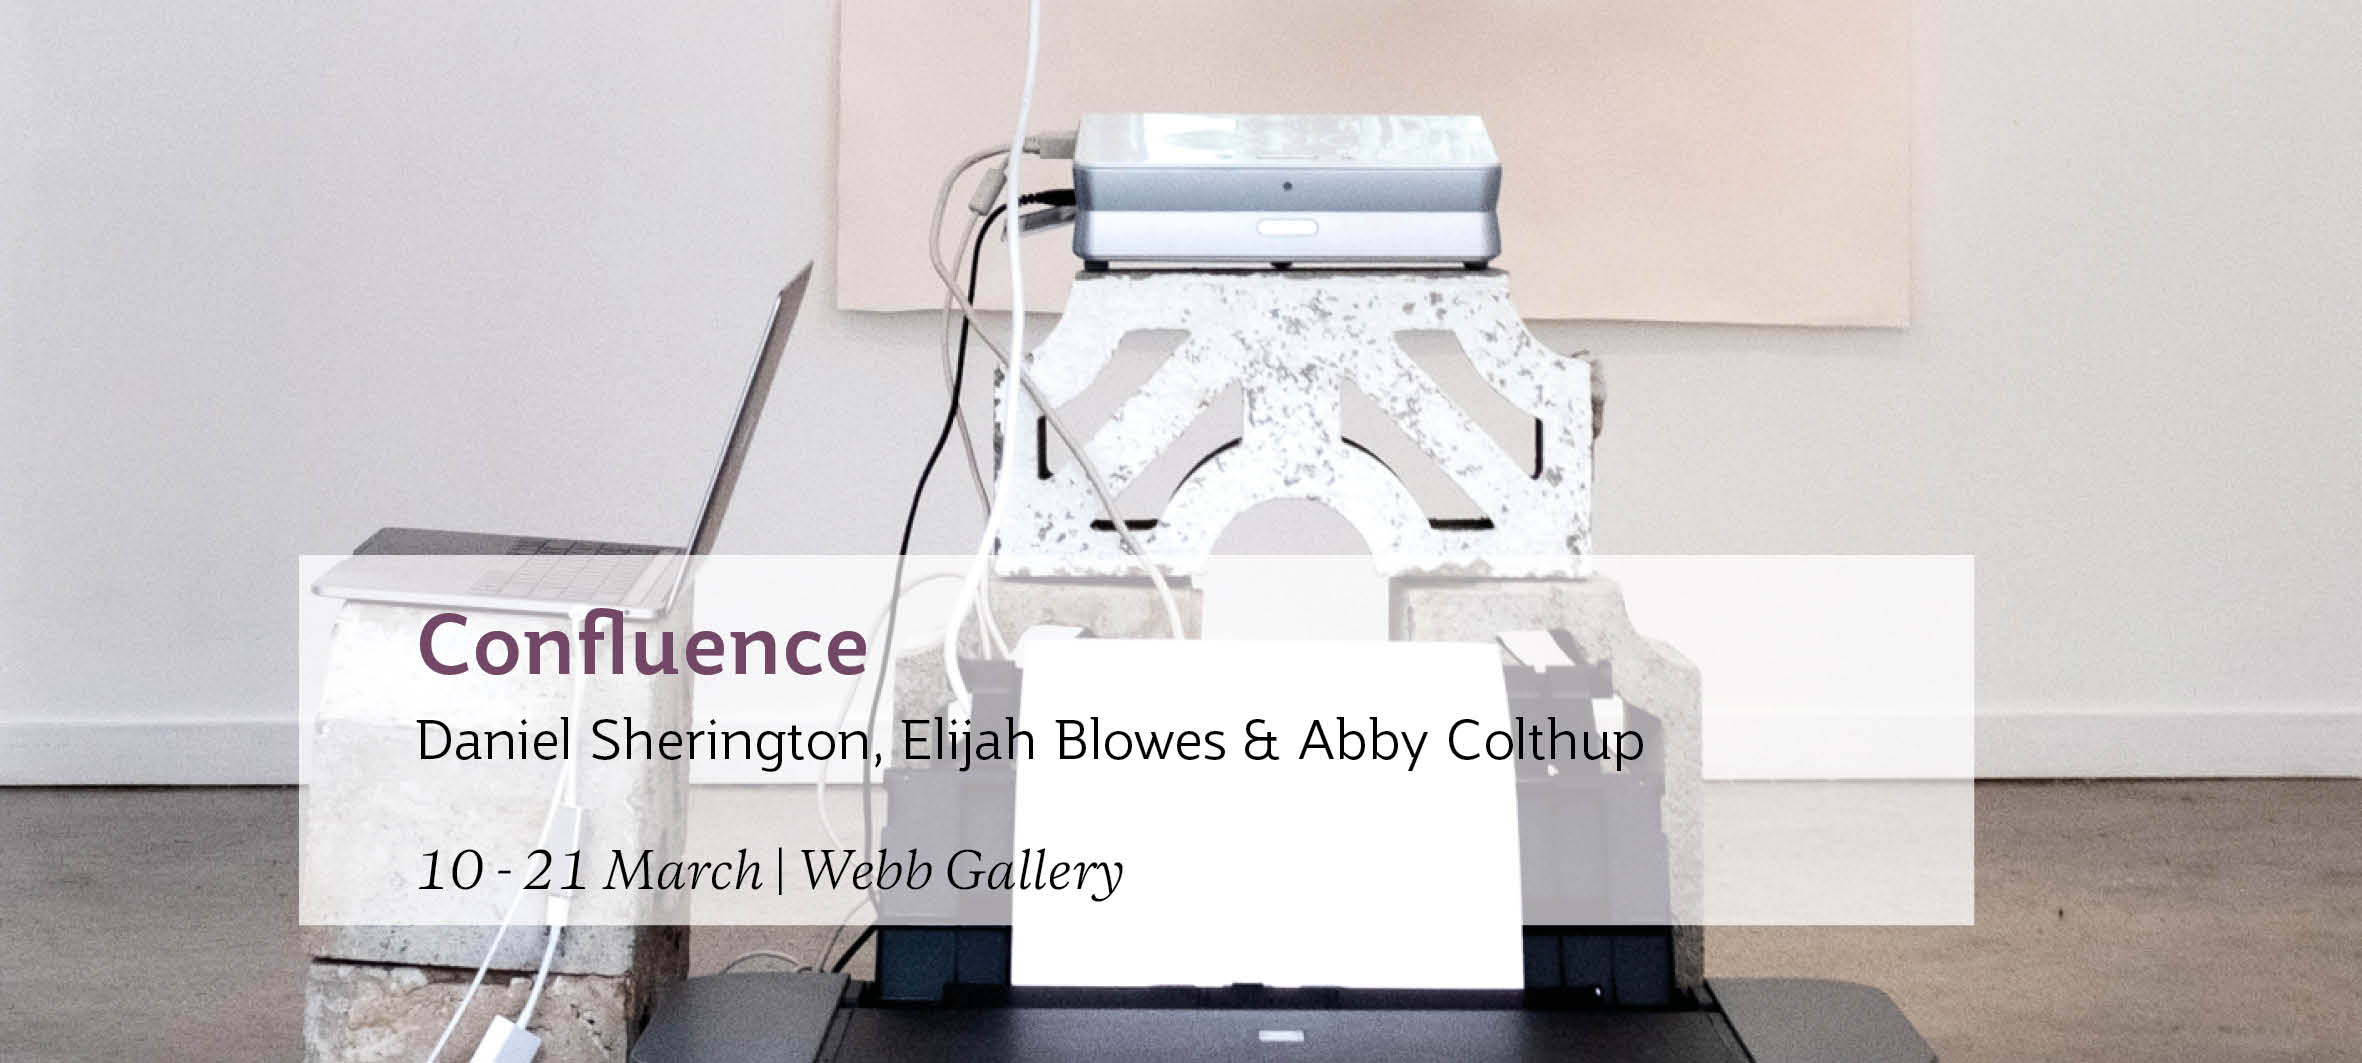 Confluence: Daniel Sherington, Elijah Blowes & Abby Colthup